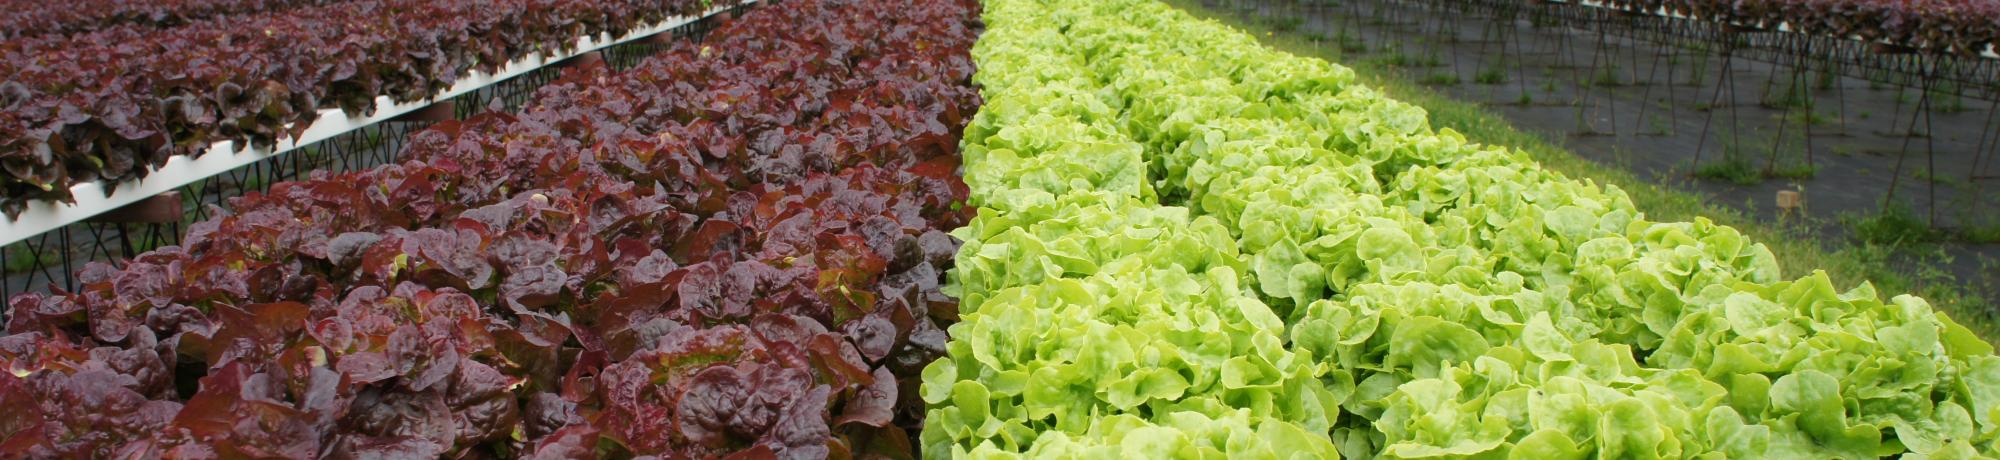 Lettuce field of green and purple lettuce